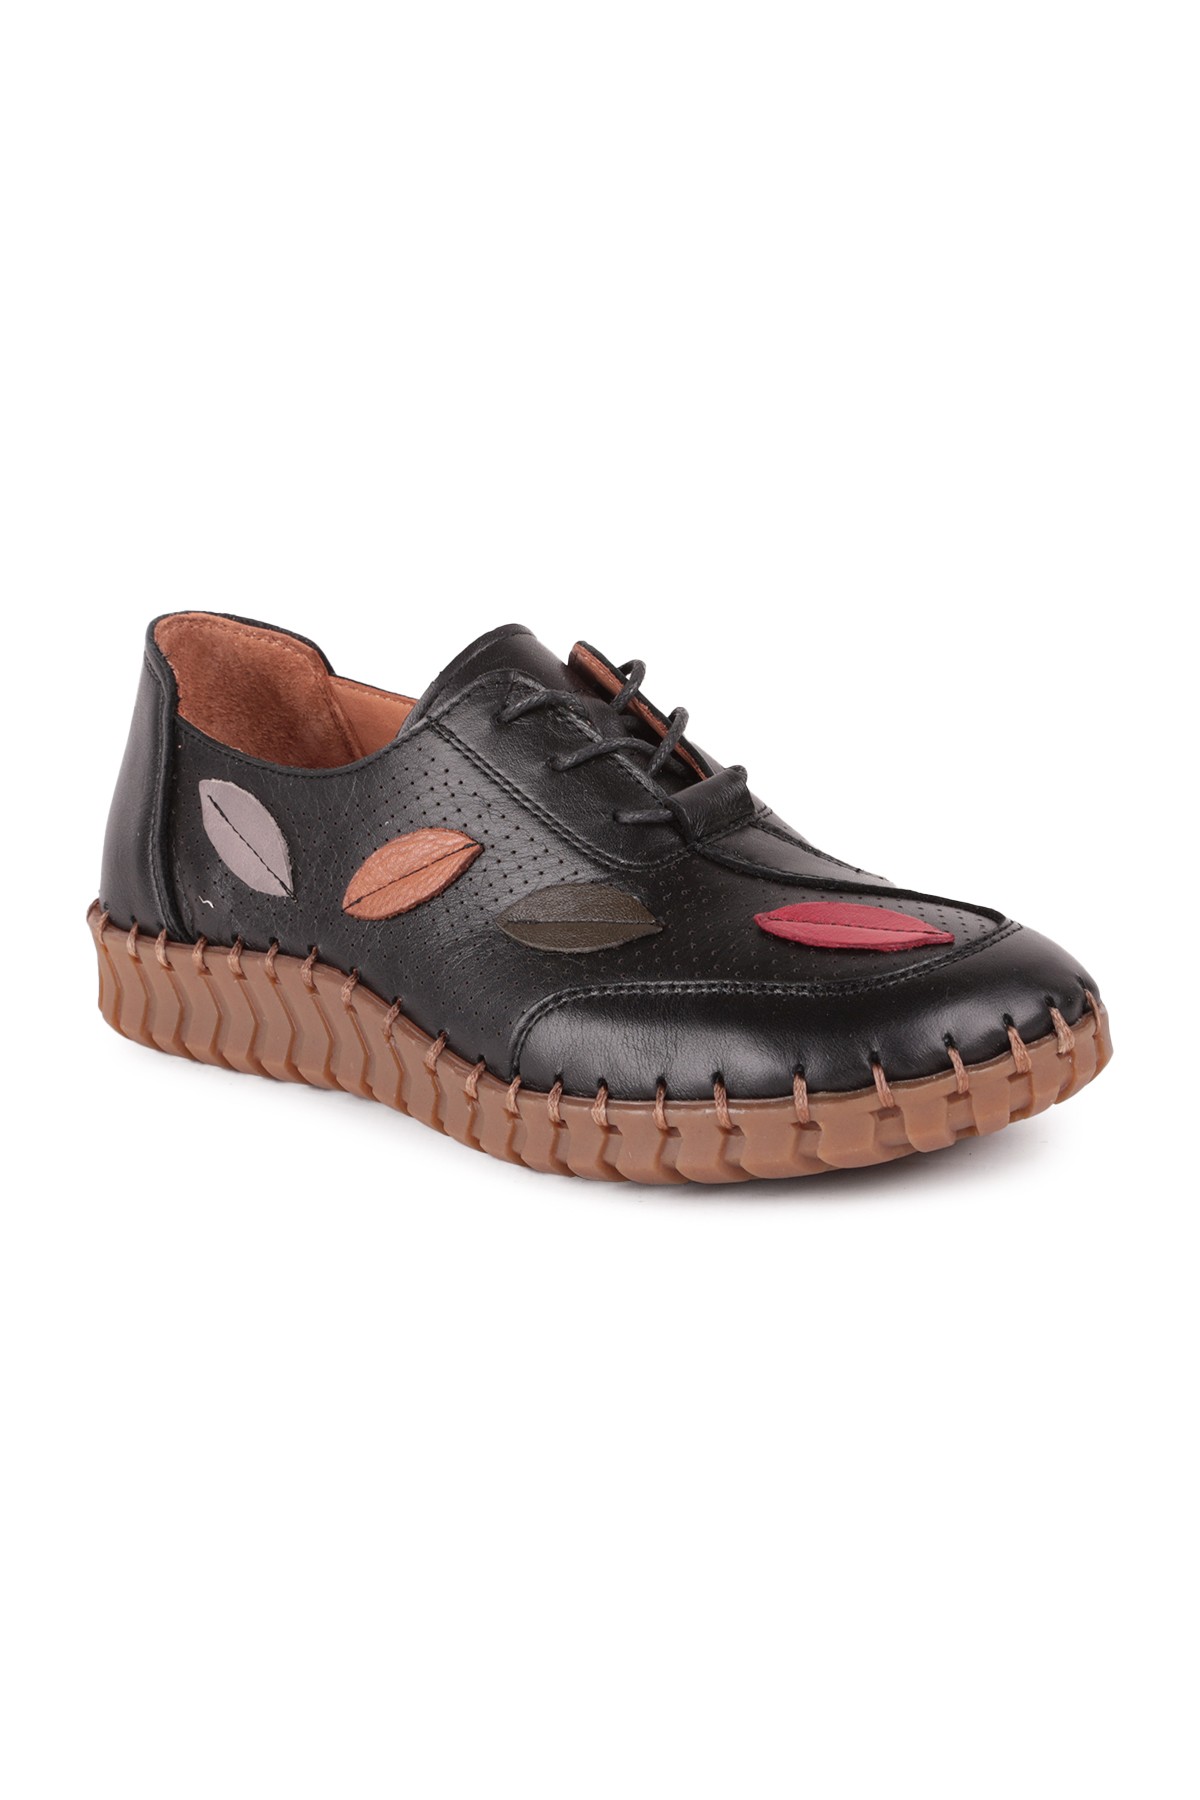 VENÜS 2010709 Kadın Loafer Ayakkabı BEJ - Siyah